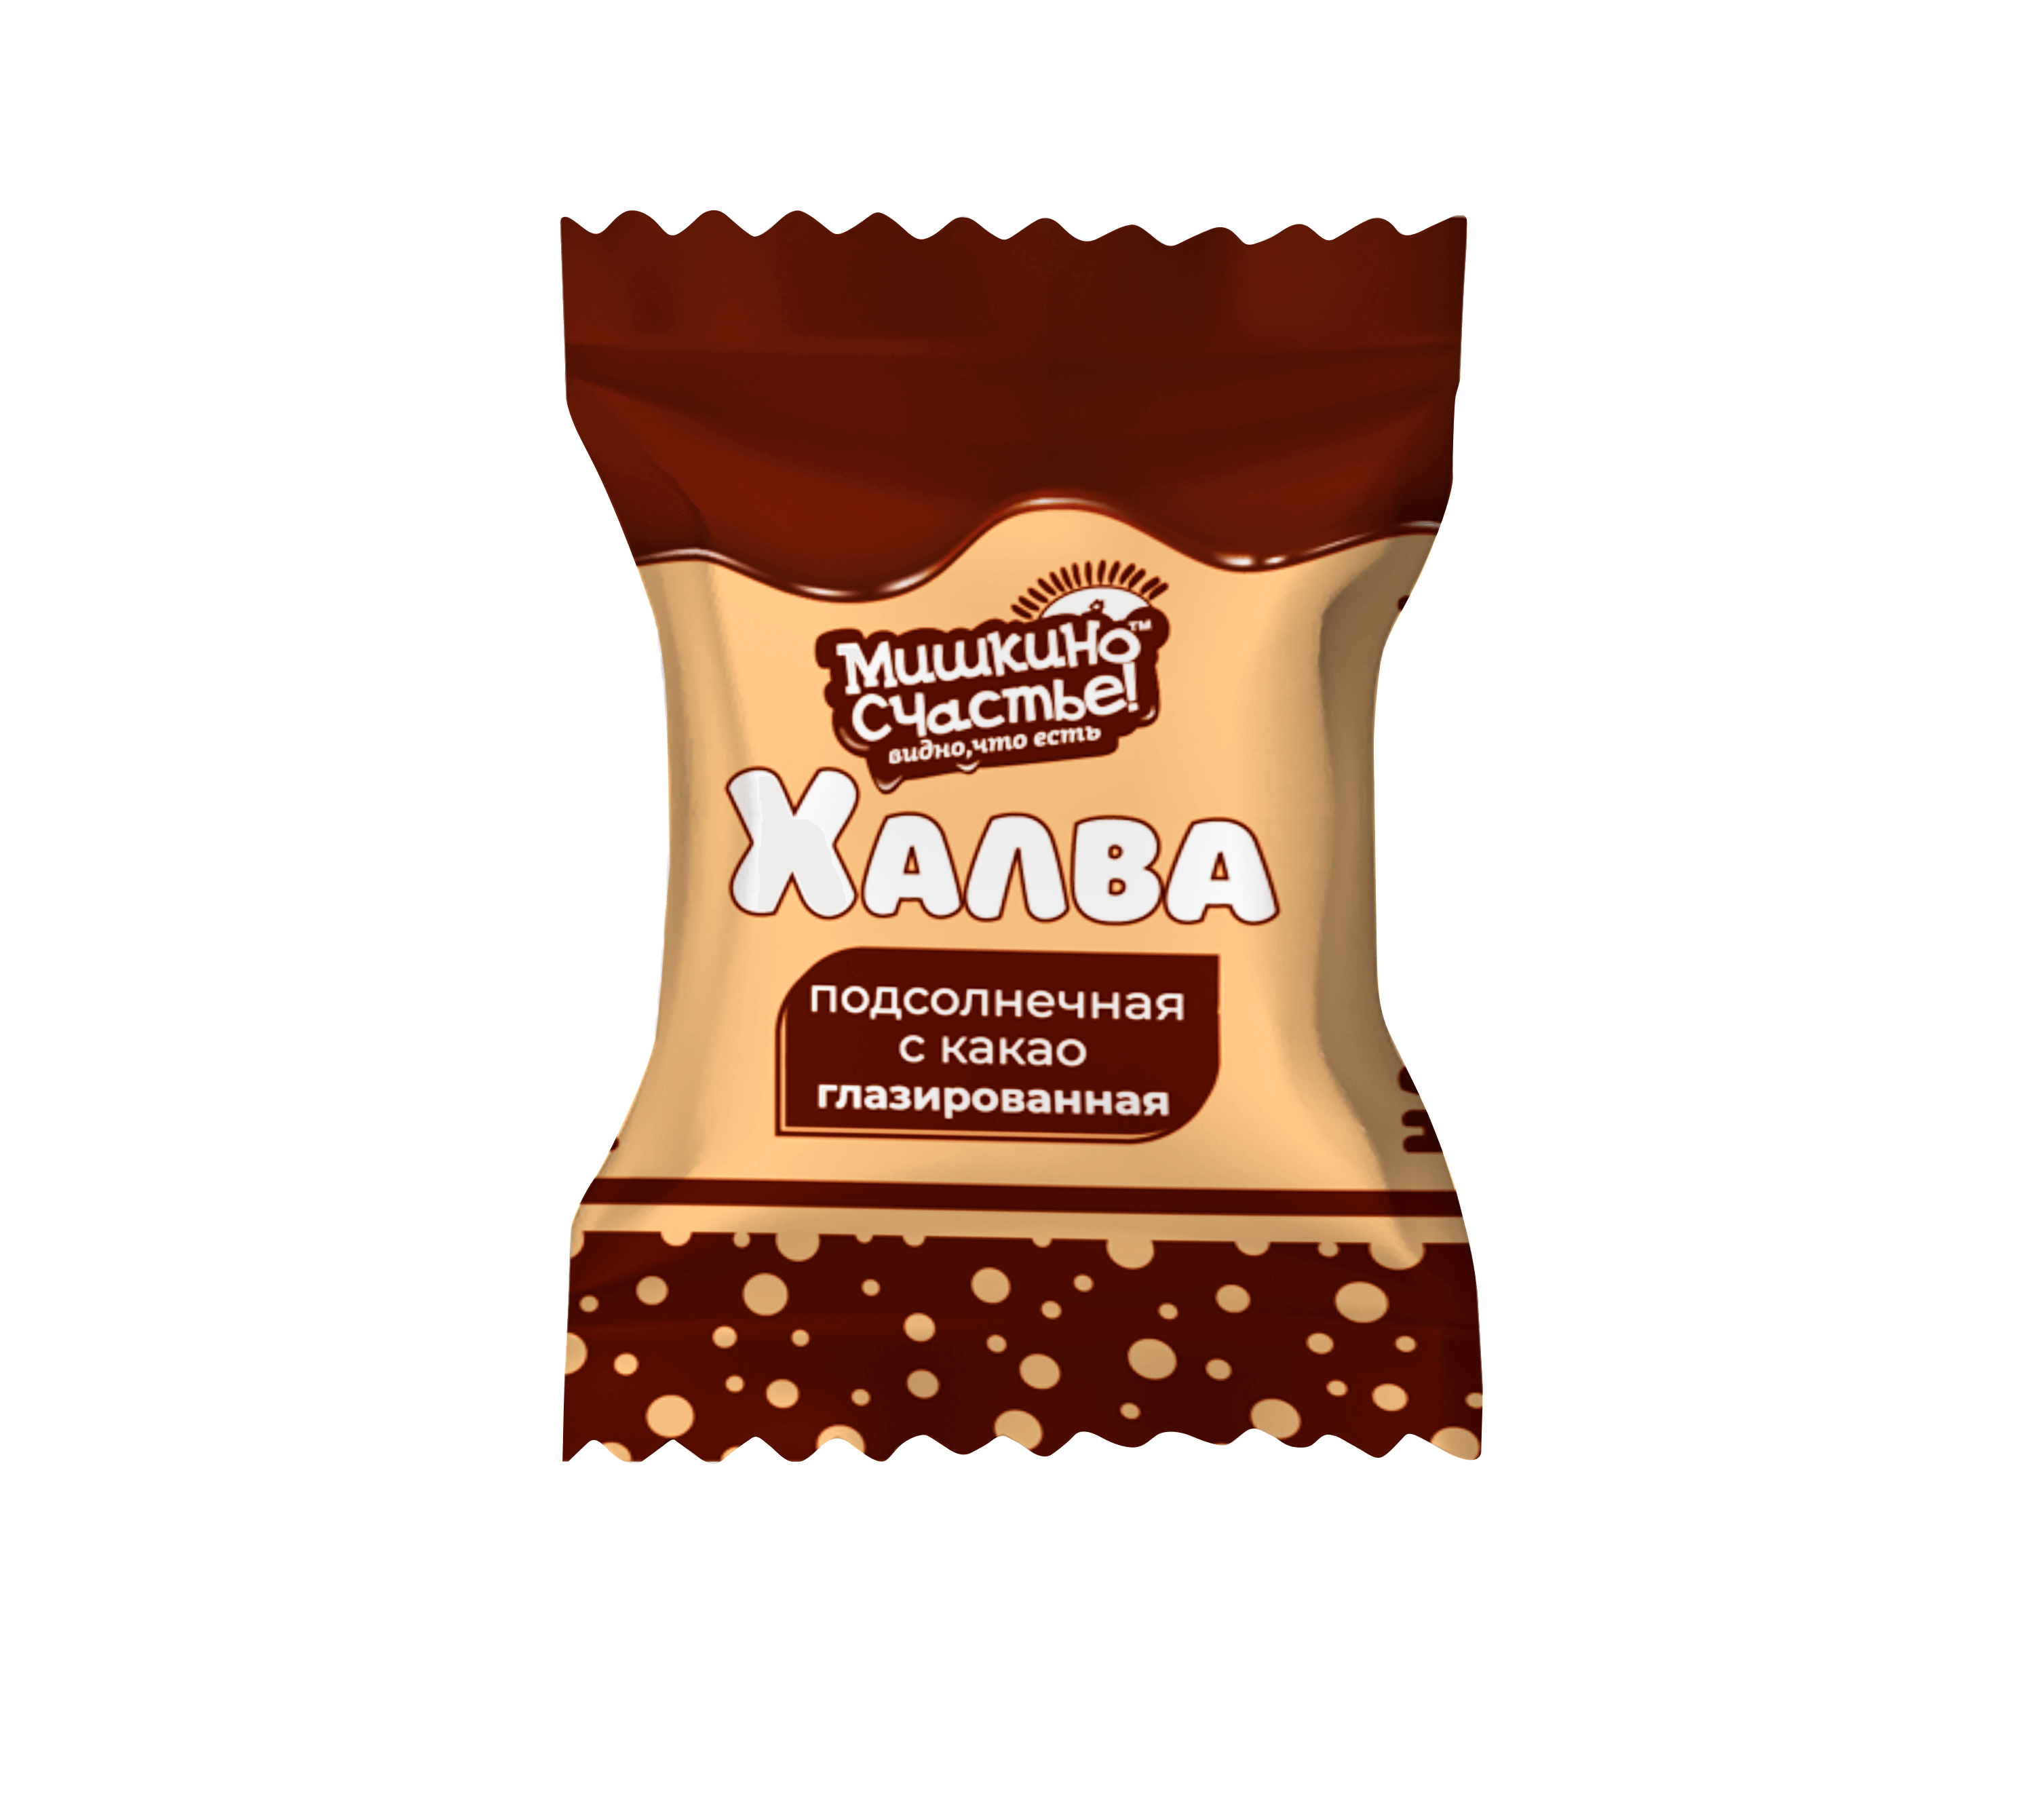 Конфеты Халва подсолнечная с какао глазированная "Мишкино счастье" 3кг, 3 кг.